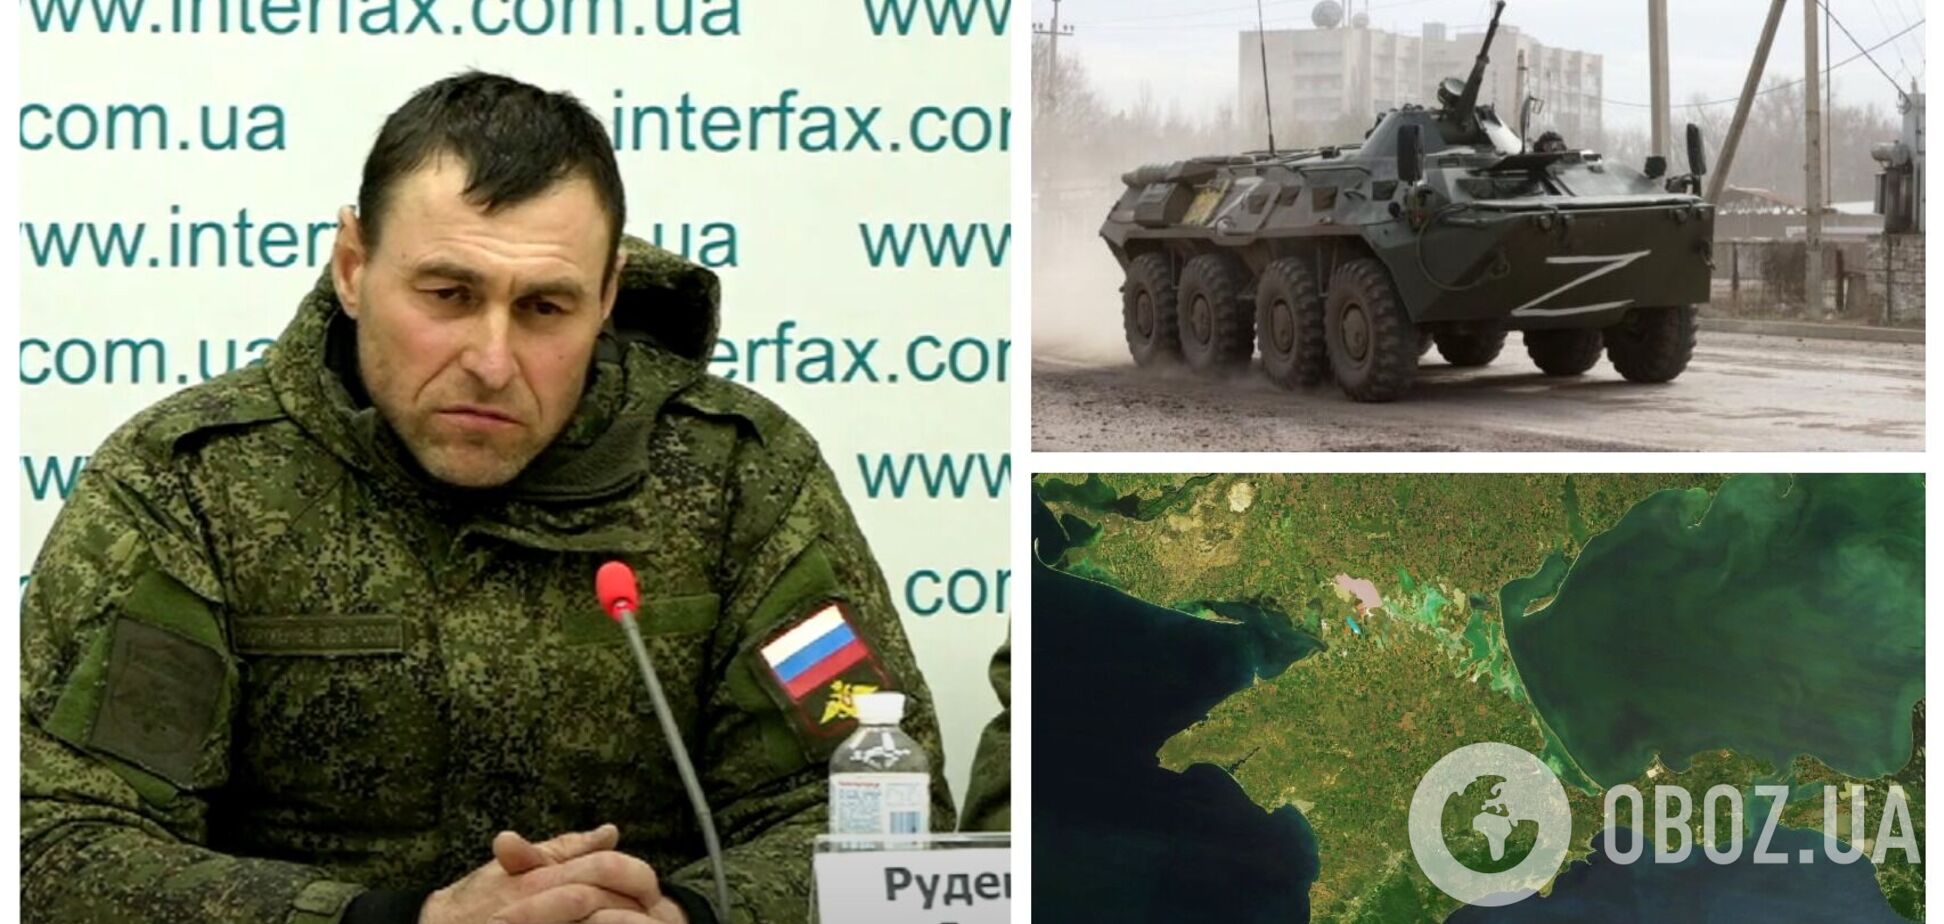 'Мы напали, как фашисты': предатель Украины из Крыма со слезами рассказал, как были нанесены первые удары 24 февраля